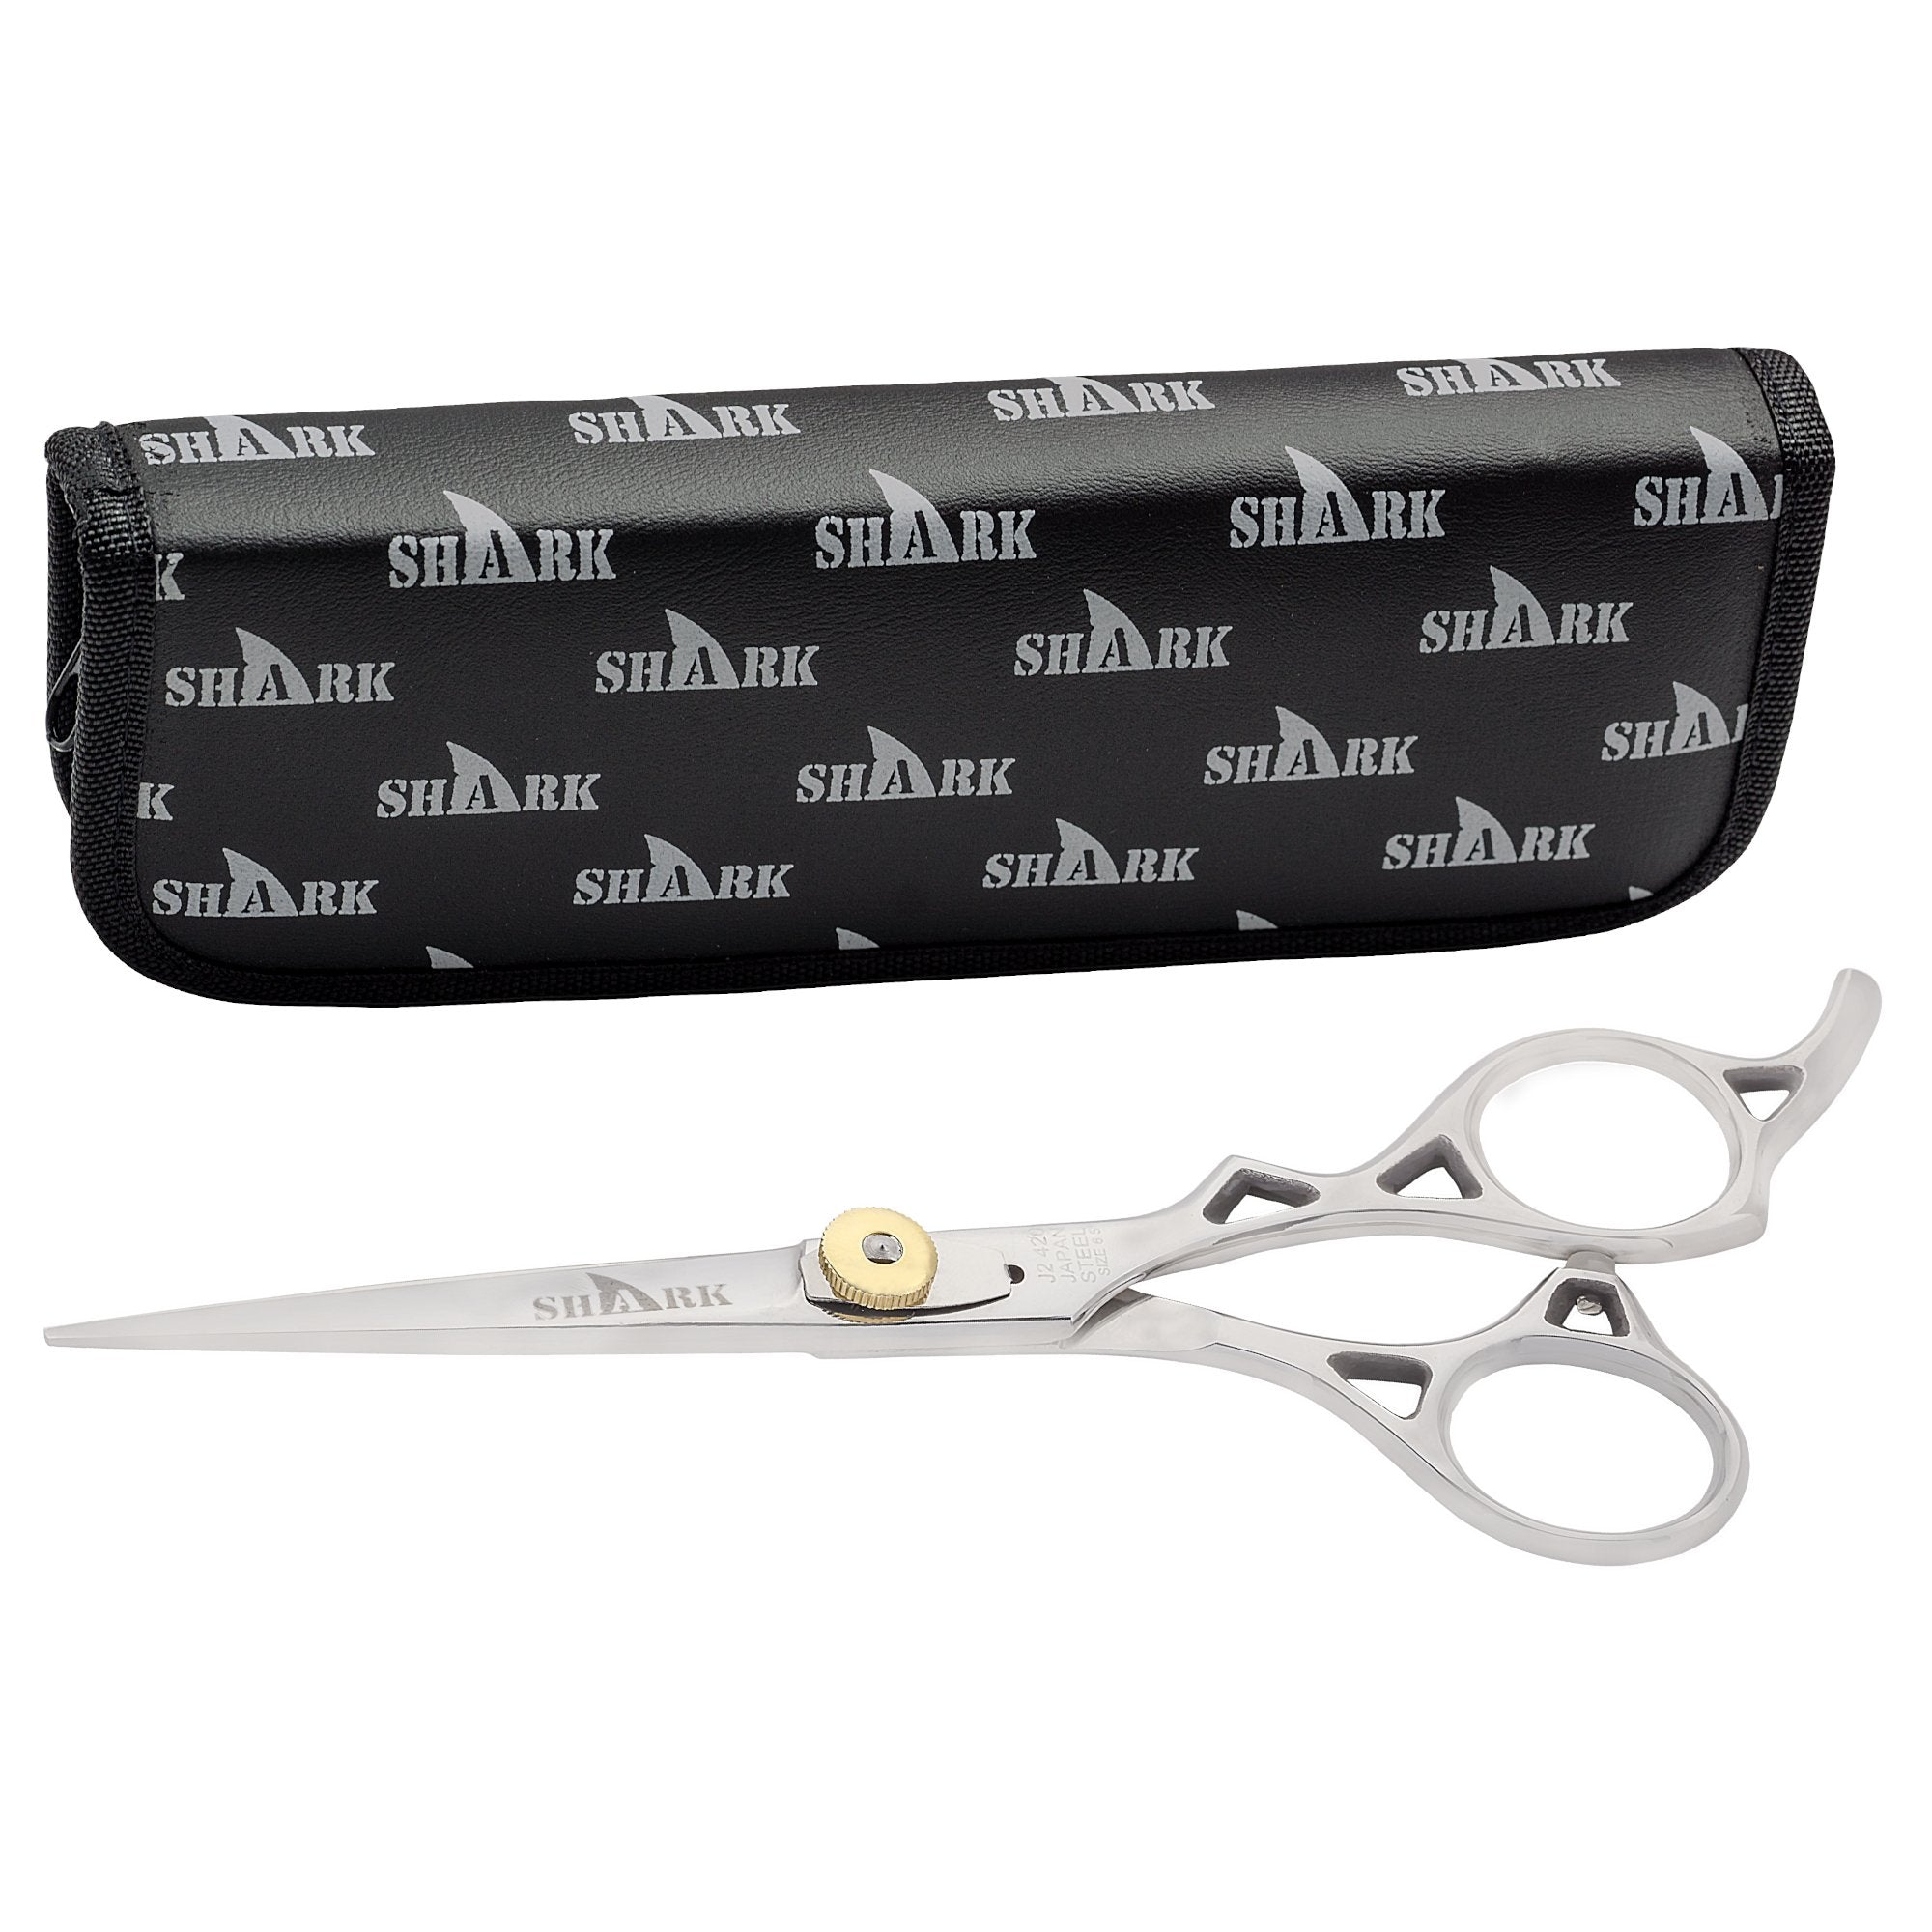 Shark Barber Scissors with Adjustable Screw